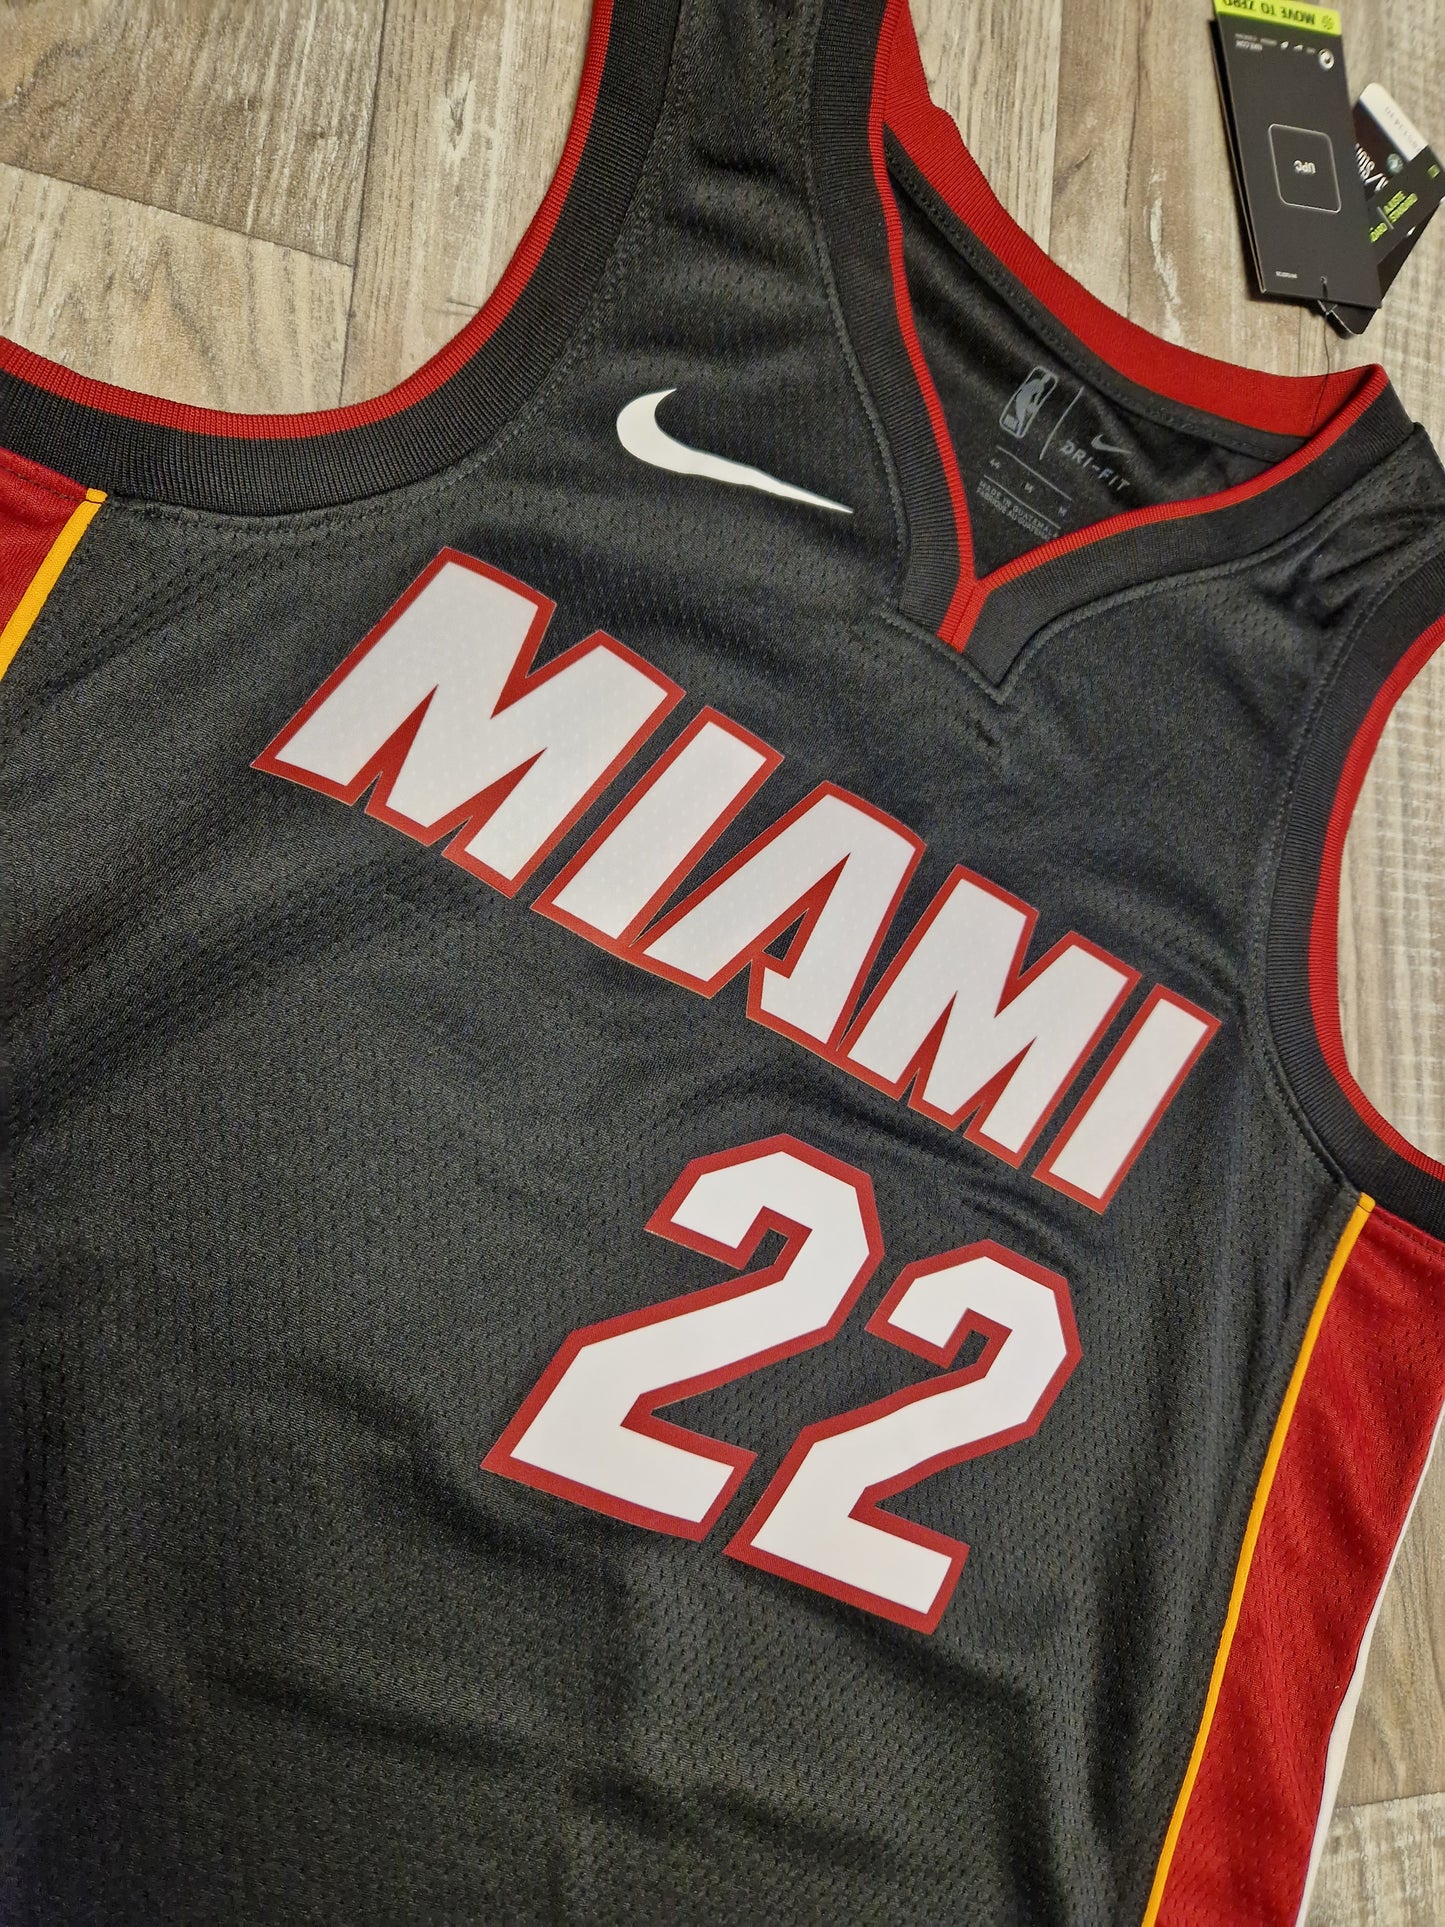 Jimmy Butler Miami Heat Jersey Size Medium